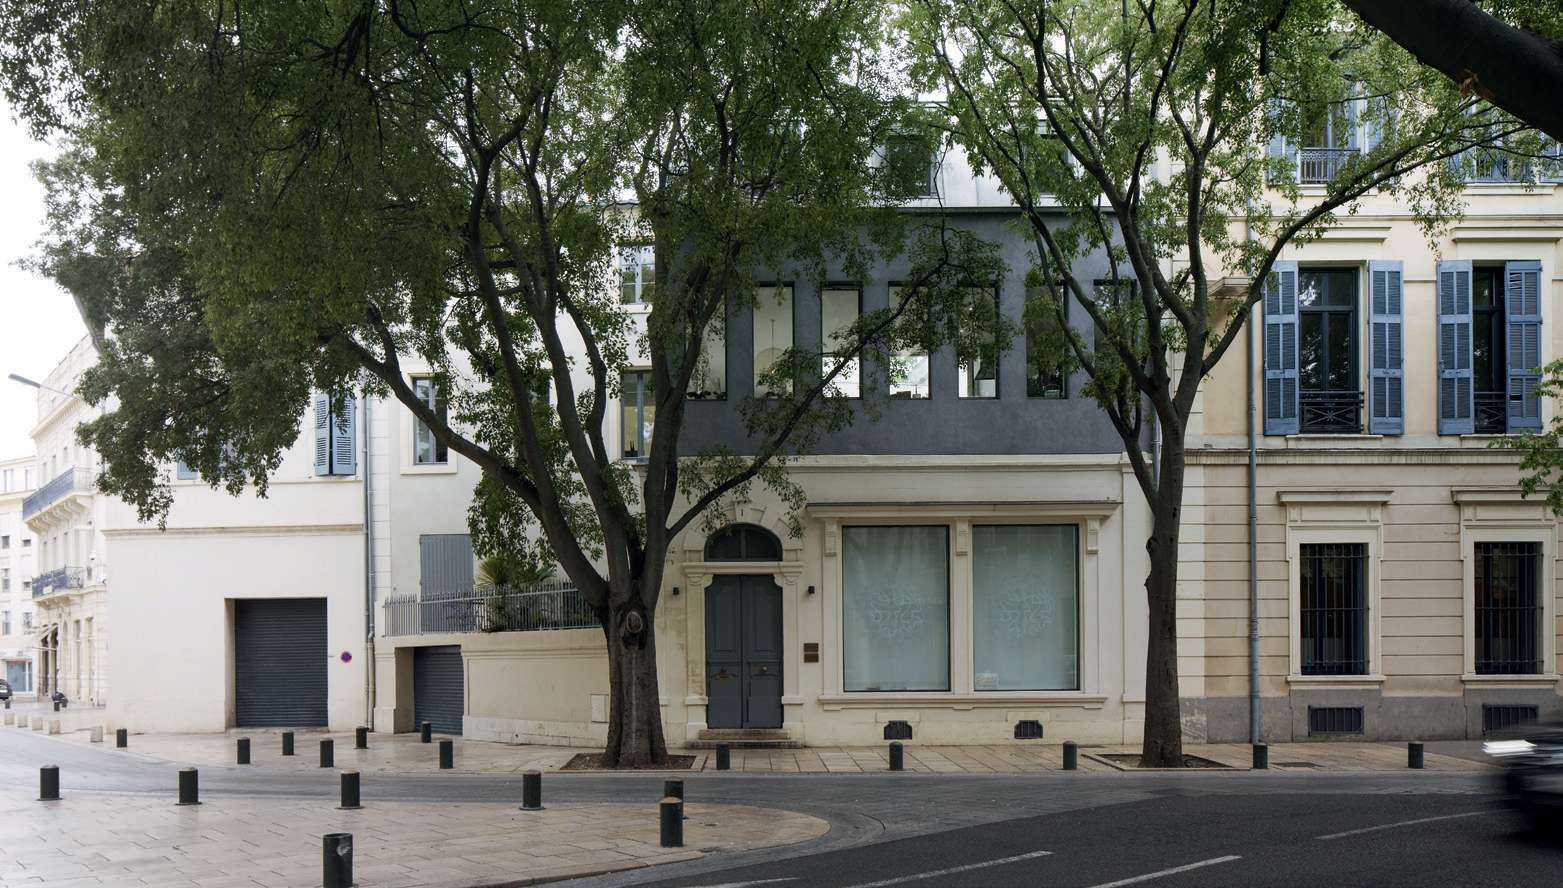 Fotos: Daniel Moulinet / Architekten : Agence Roulle-Oliveira / Pelletofen installiert von Ambiance Chaleur Nîmes (Frankreich)